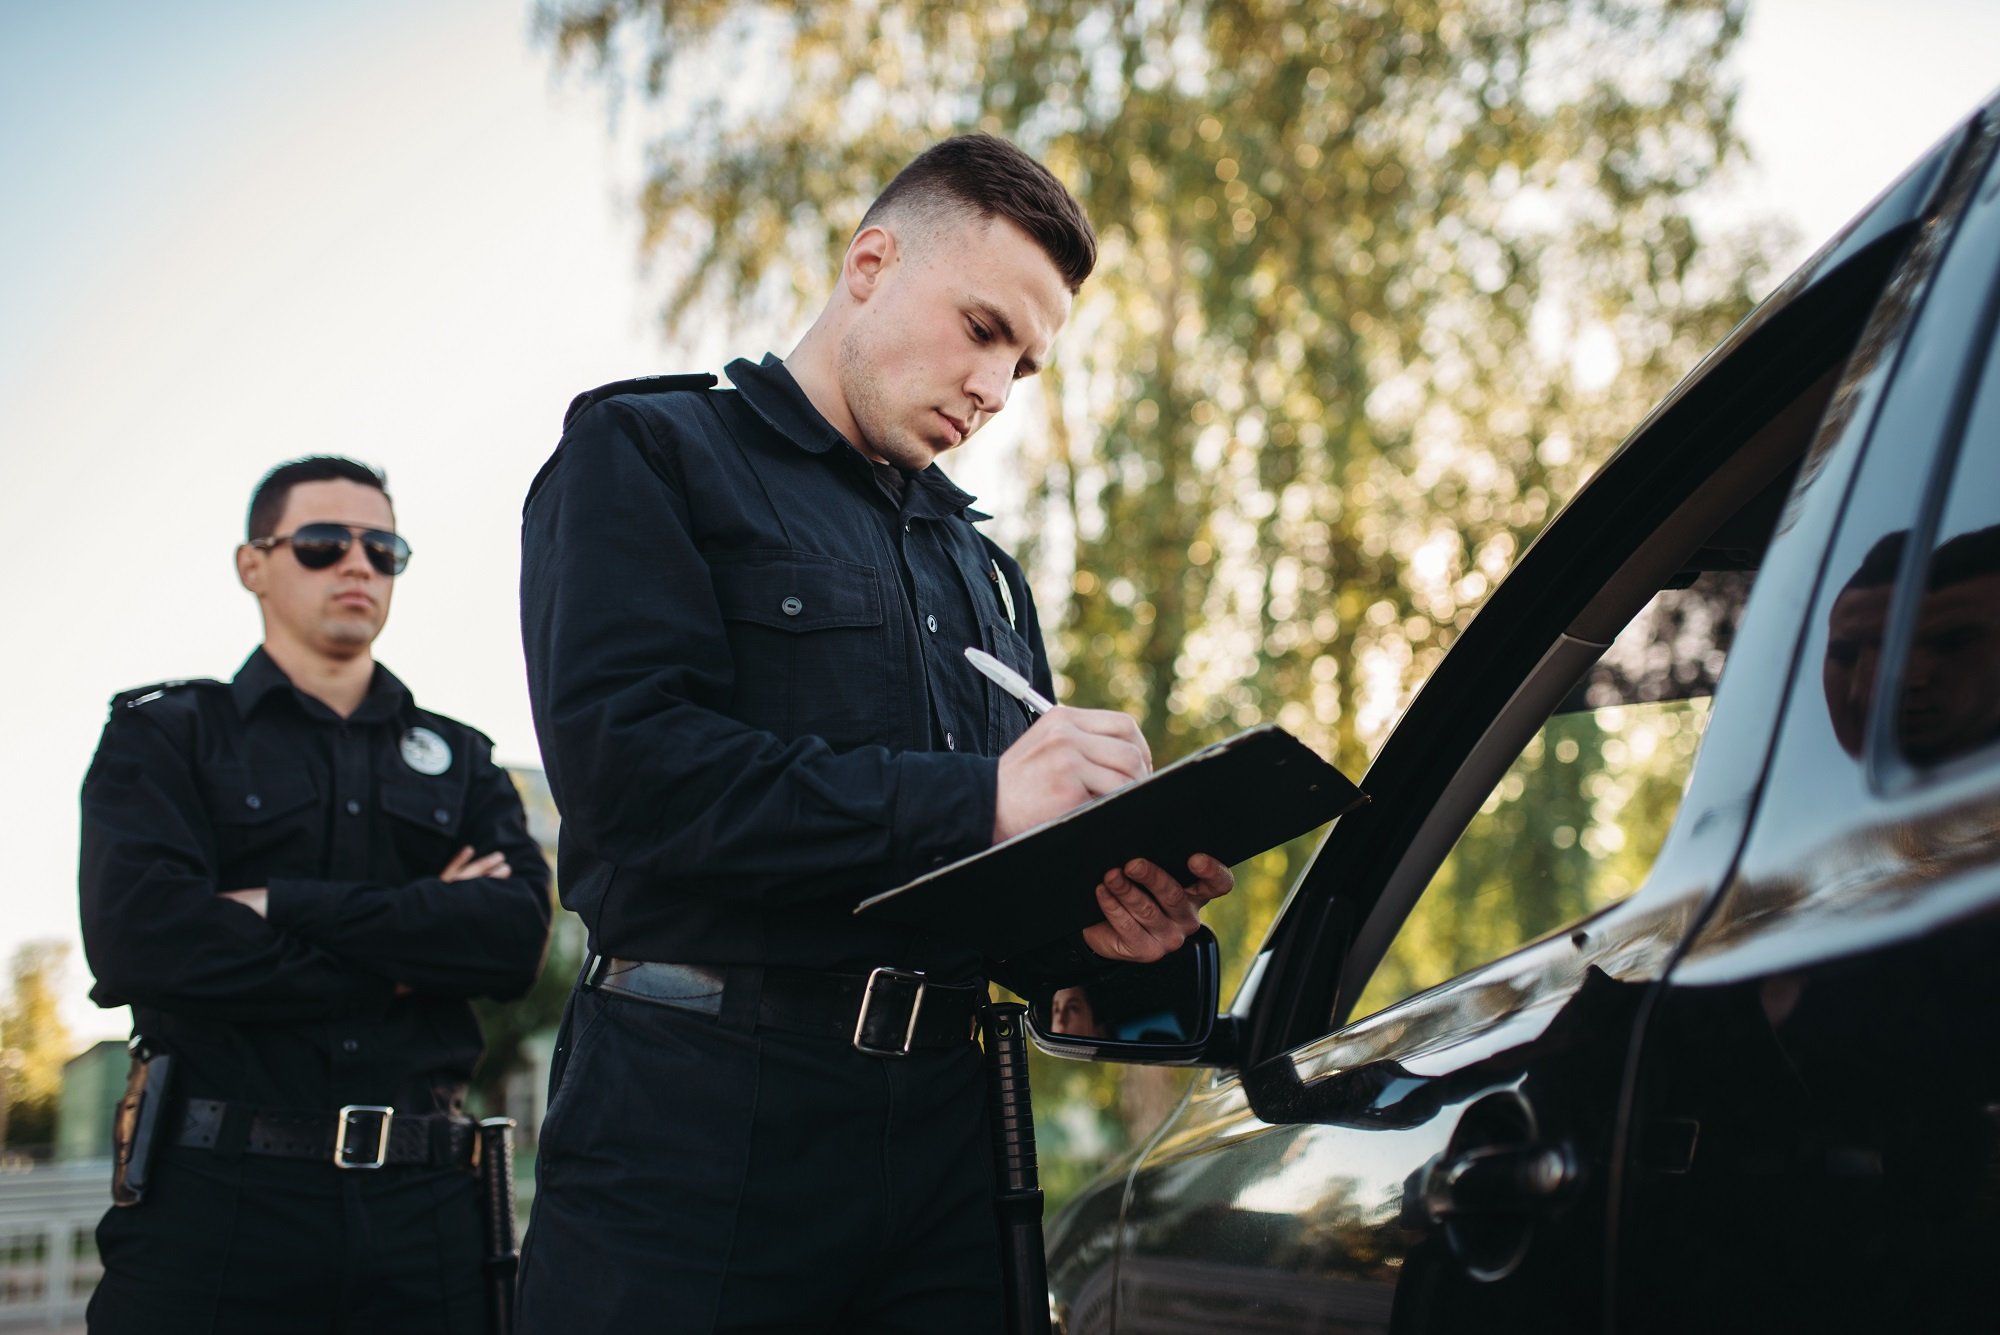 Oficiales de policía emitiendo multa. | Foto: Shutterstock